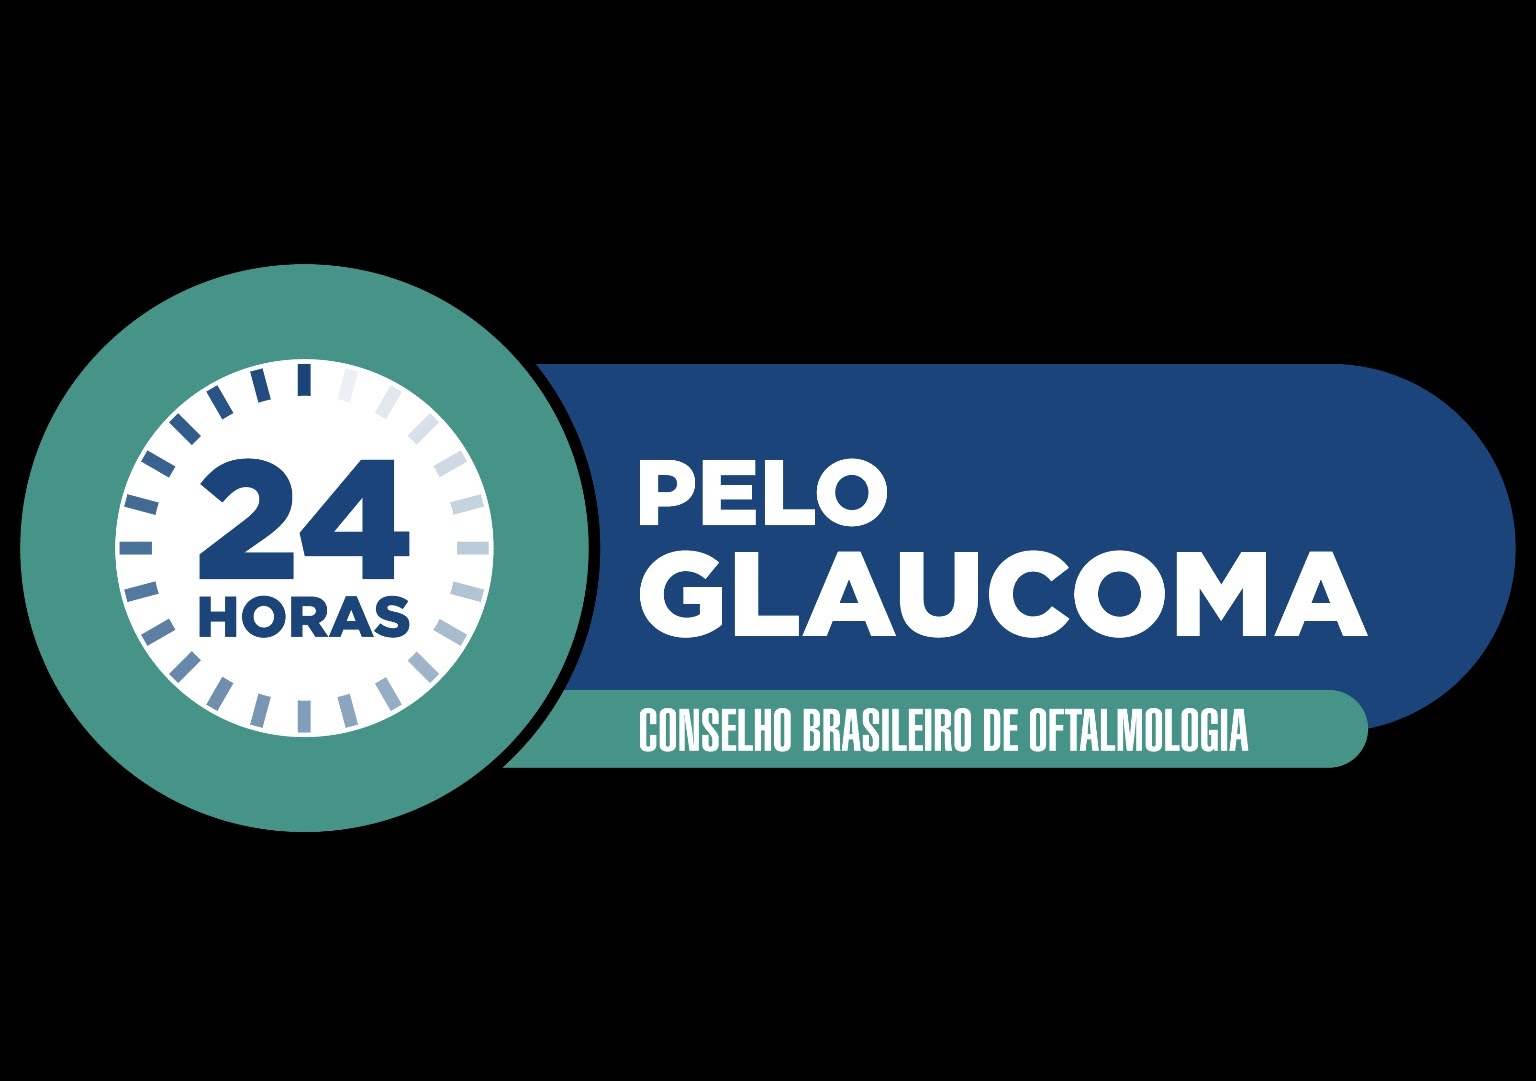 INSTITUCIONAL: Evento para conscientização do combate ao glaucoma ocorre neste fim de semana